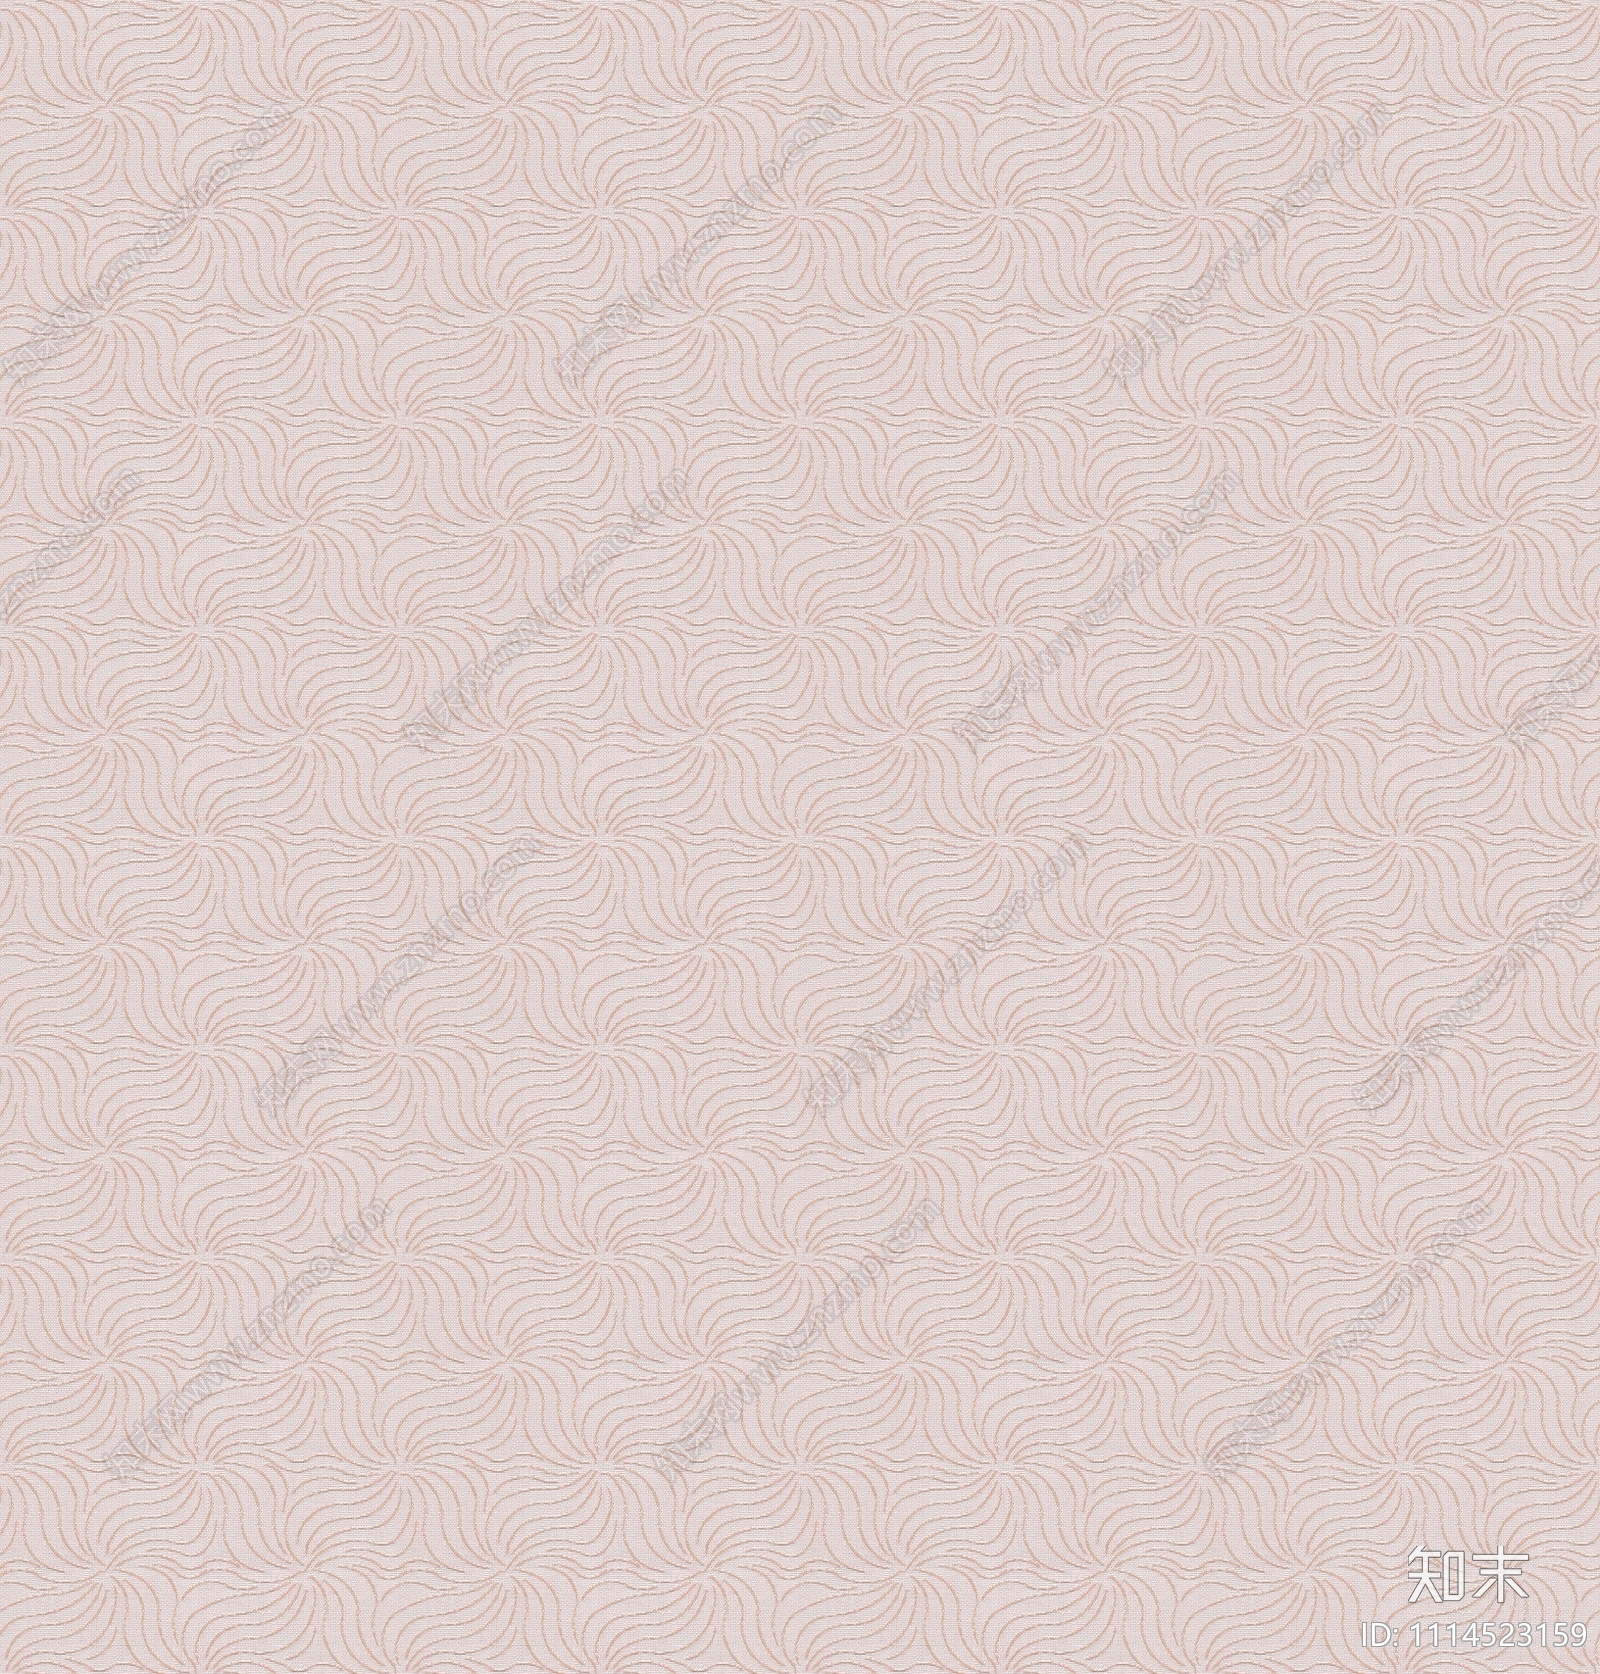 现代简约粉色花纹壁纸贴图下载【ID:1114523159】